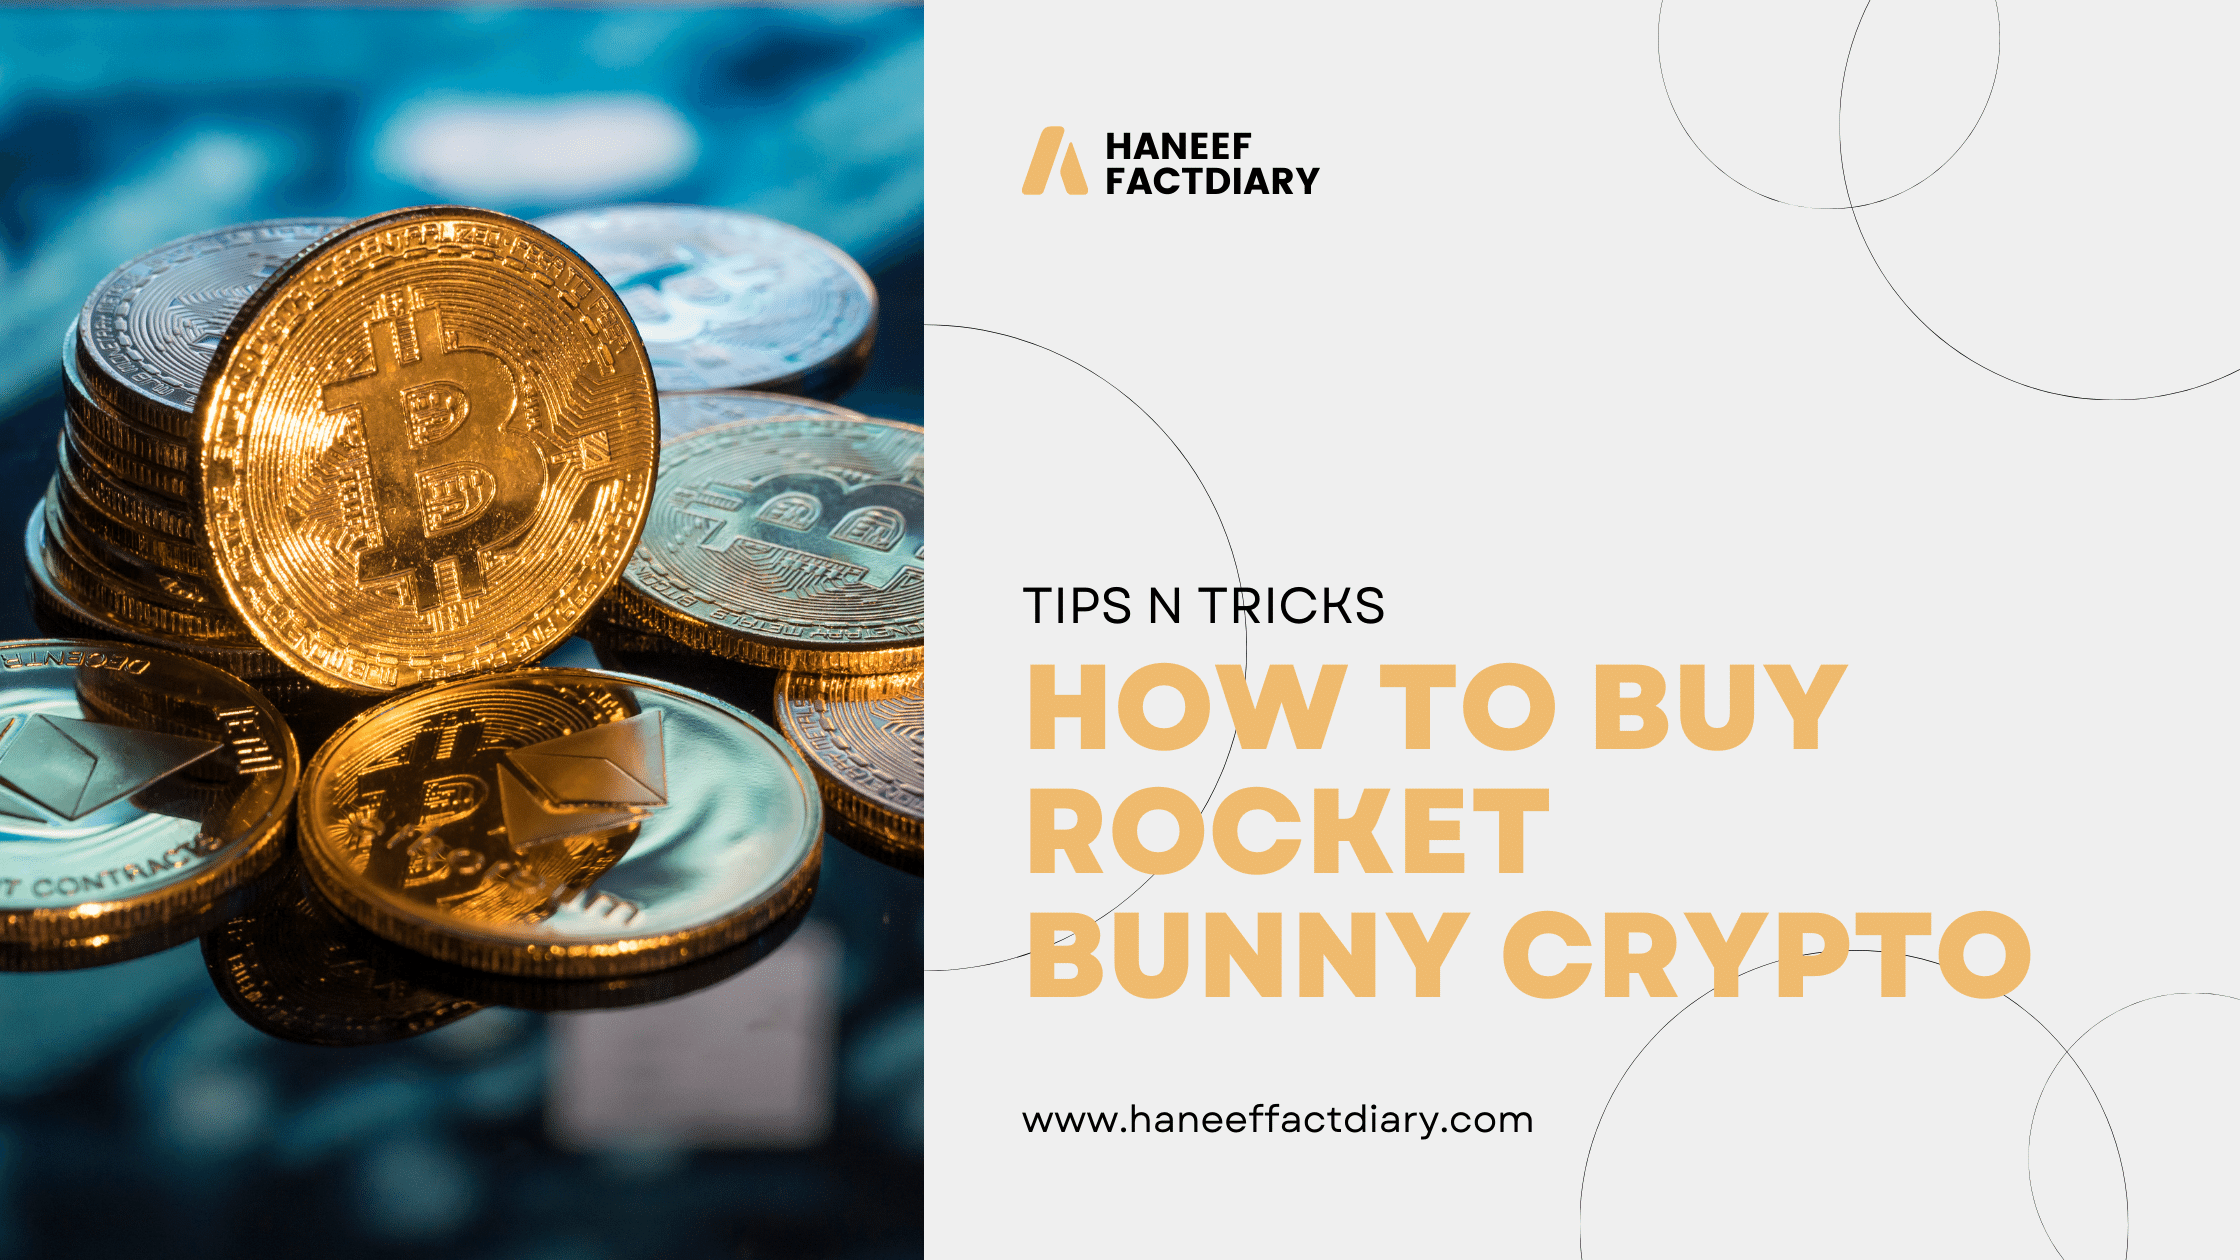 Buy Rocket Bunny Crypto